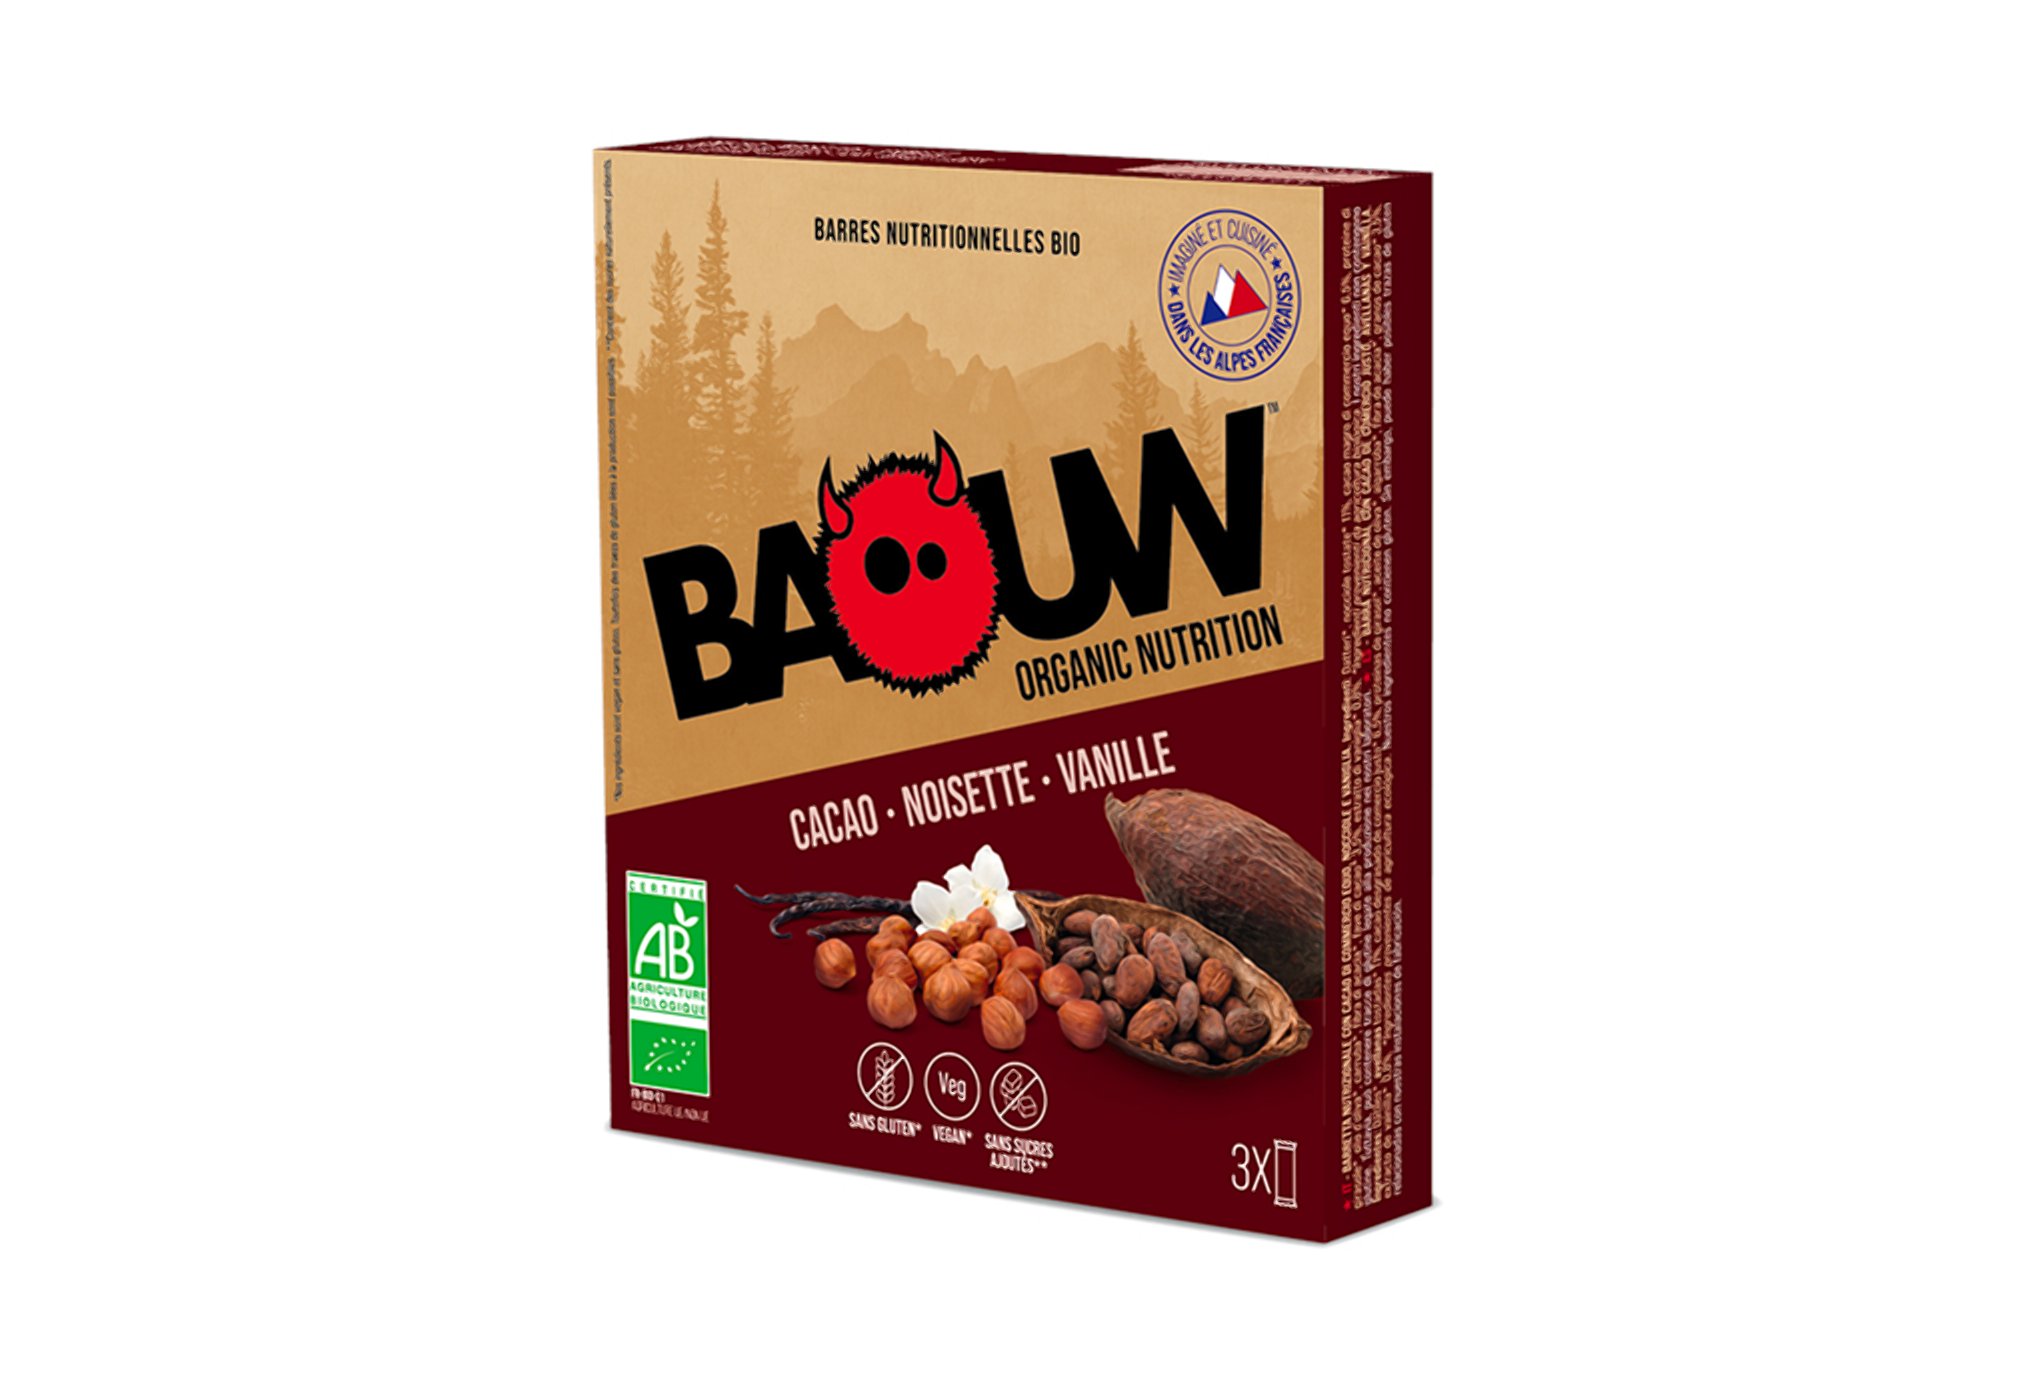 Baouw Étui 3 barres nutritionnelles bio - Cacao - Noisette - Vanille Diététique $scat.CAT_NOM